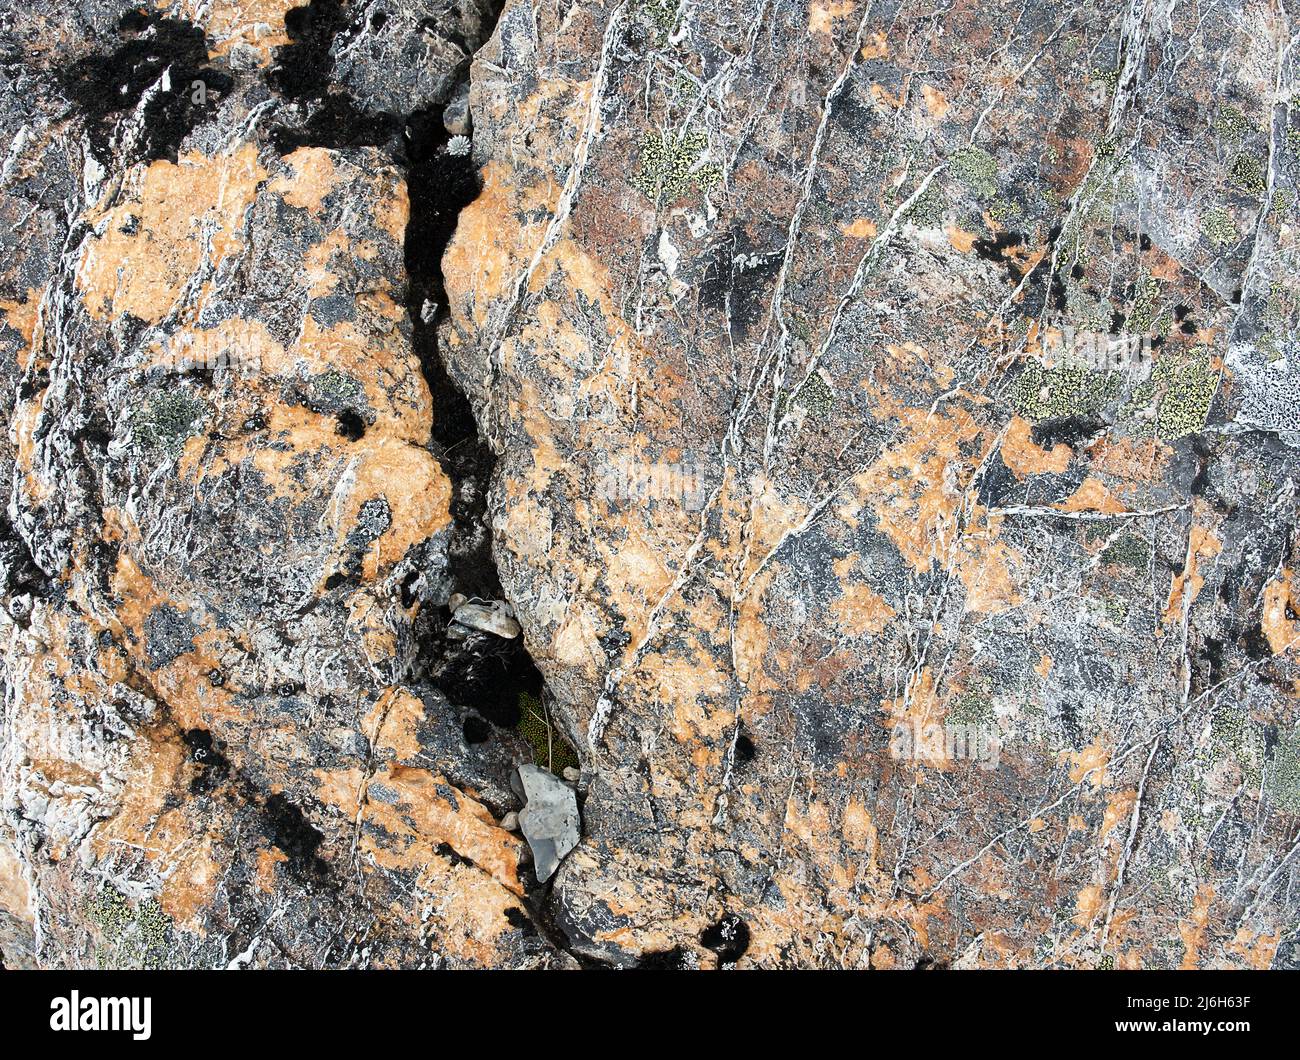 Detalle de líquenes en roca, Parque Nacional Arthurs Pass, Nueva Zelanda Foto de stock